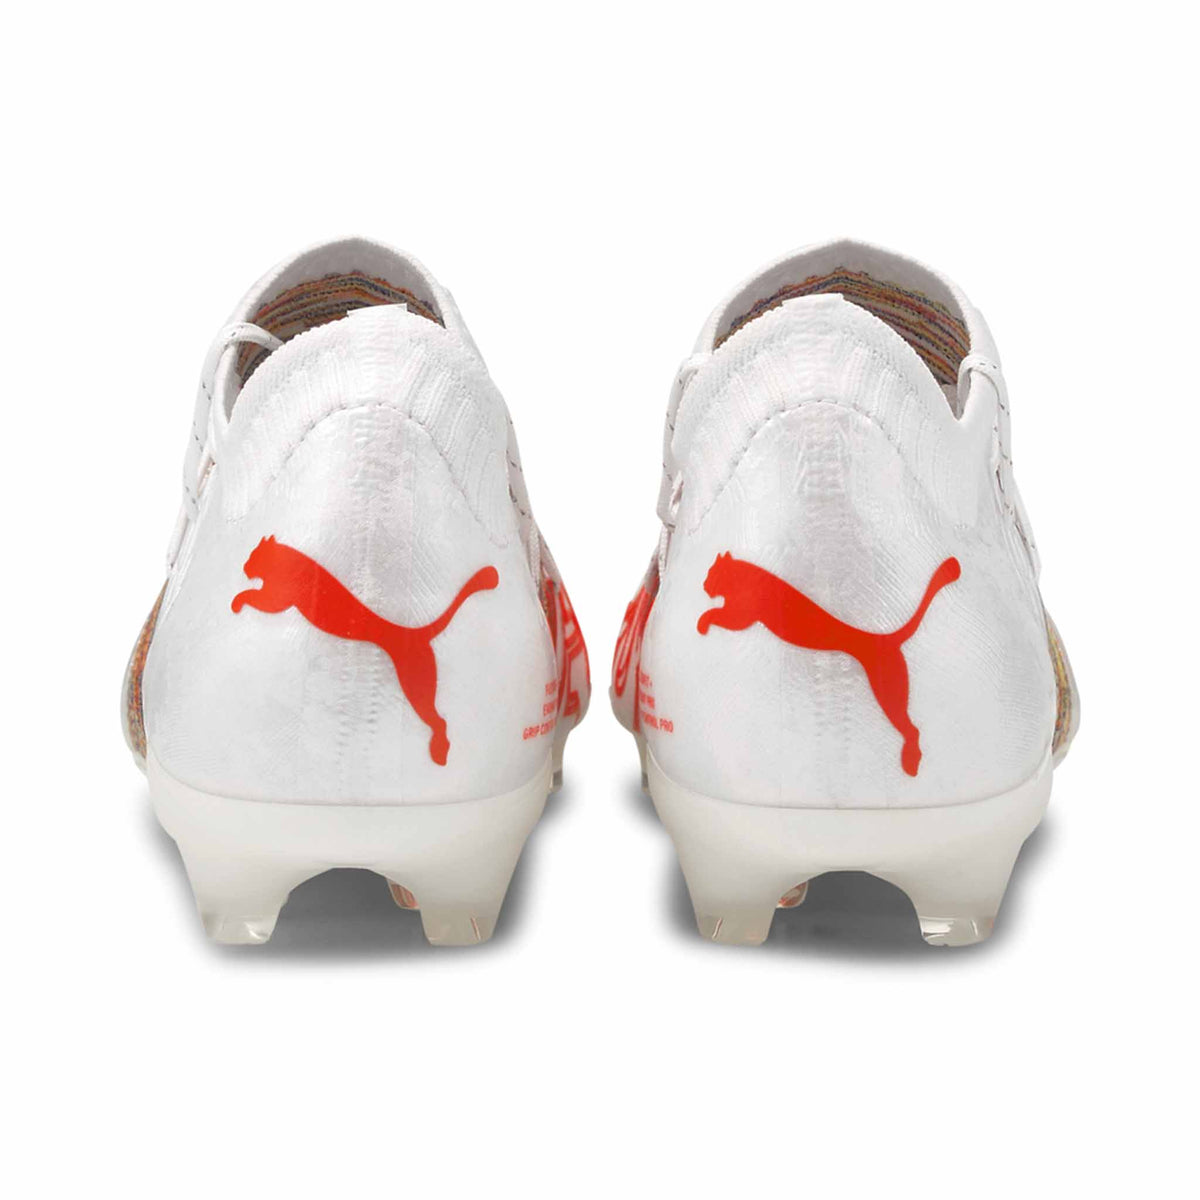 Puma Future Z 1.1 FG chaussures de soccer à crampons Puma White/Red Blast vue de dos